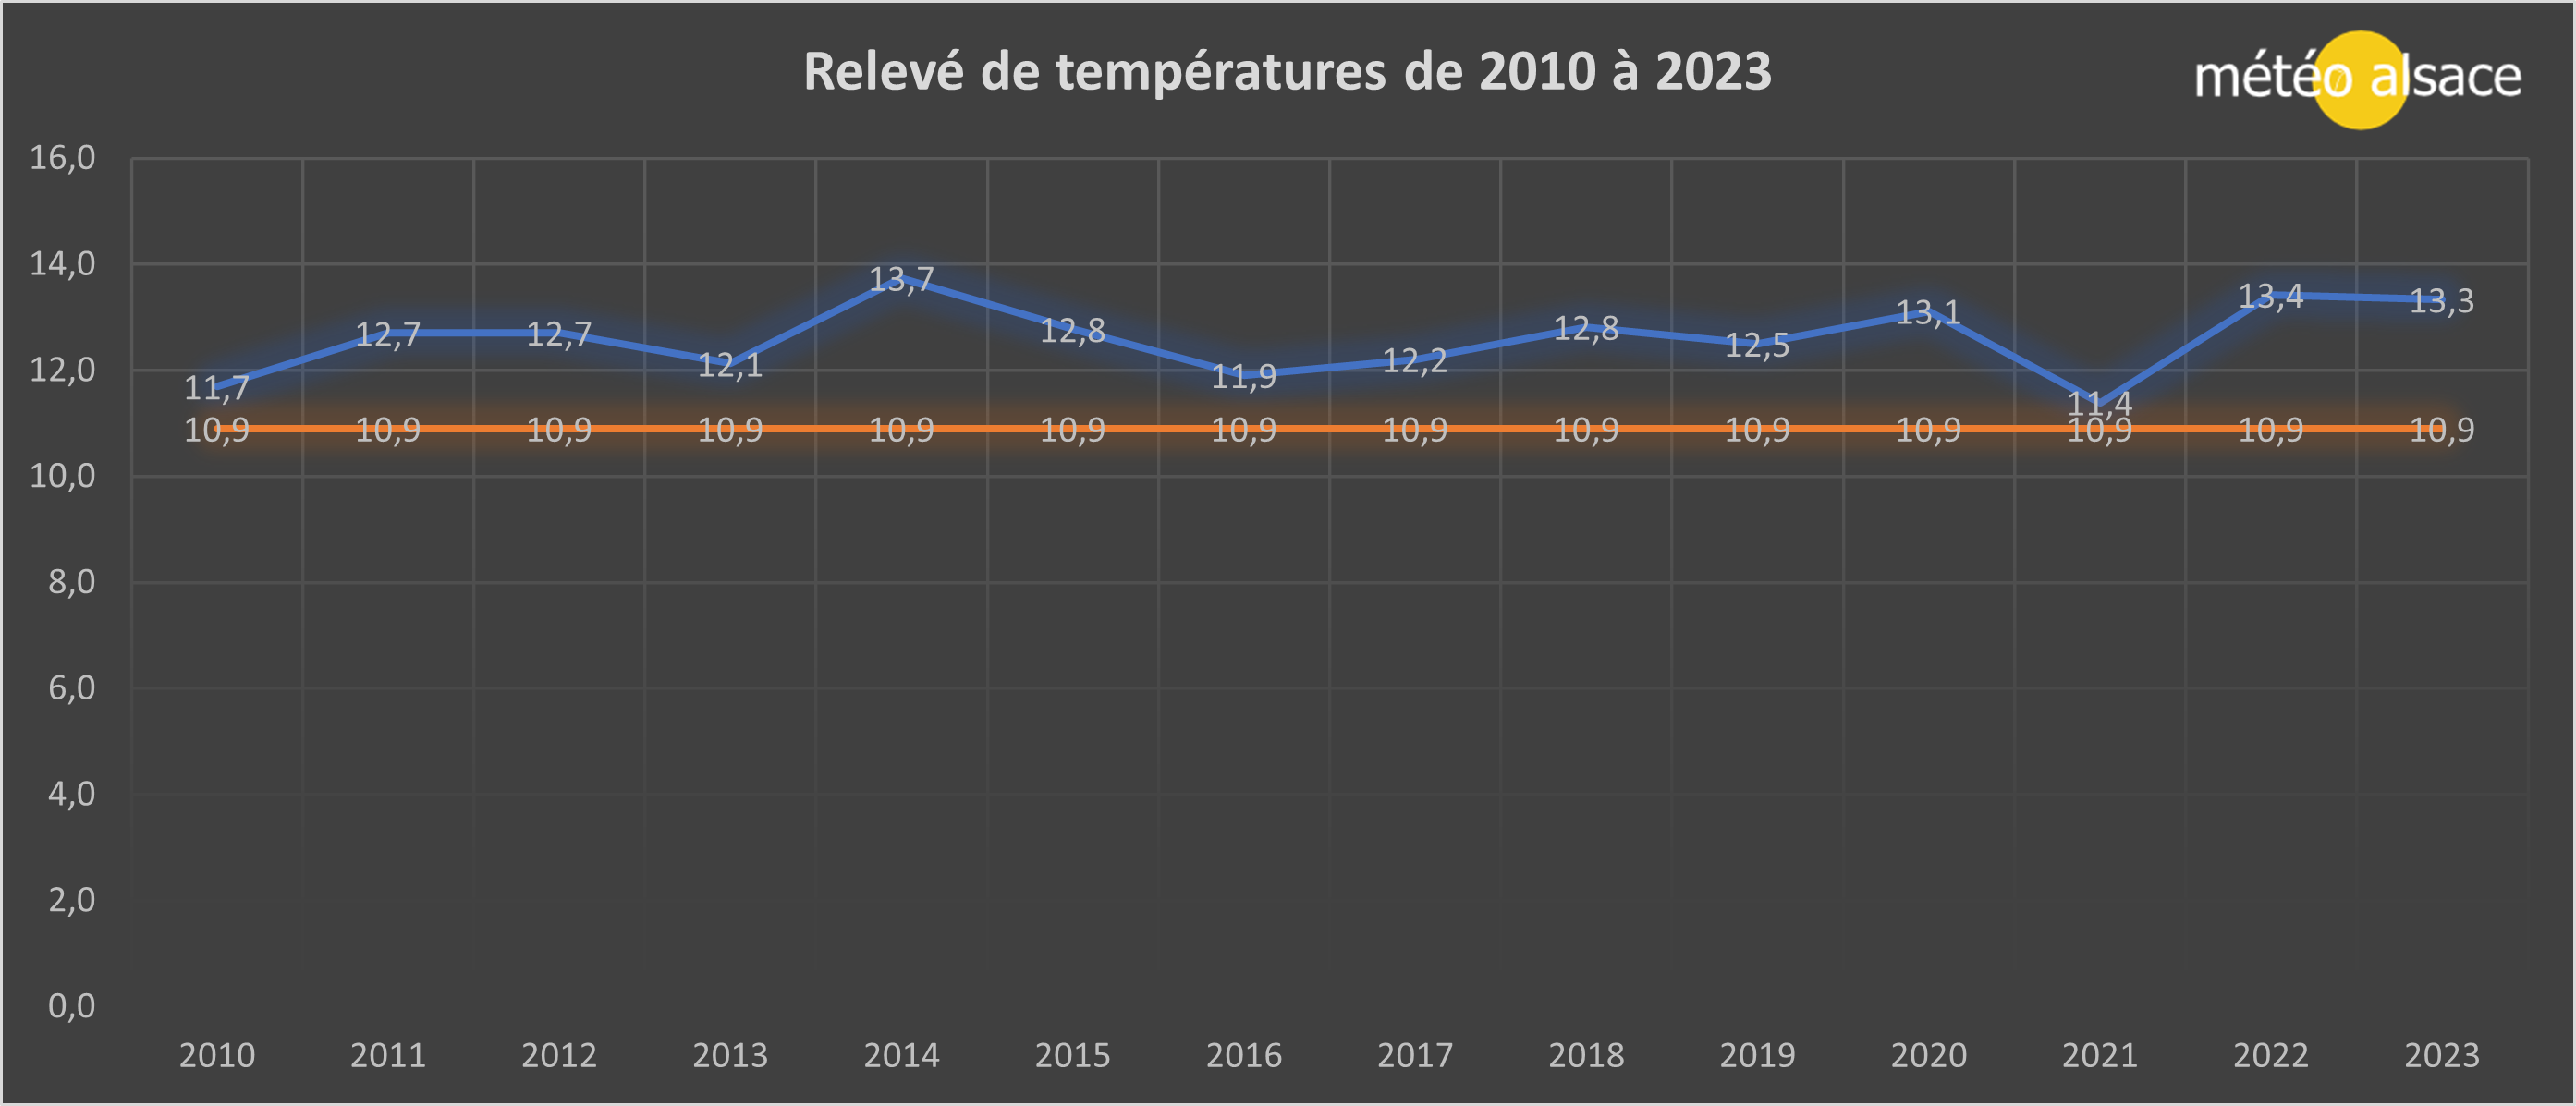 Ecarts des températures de 2010 à 2022